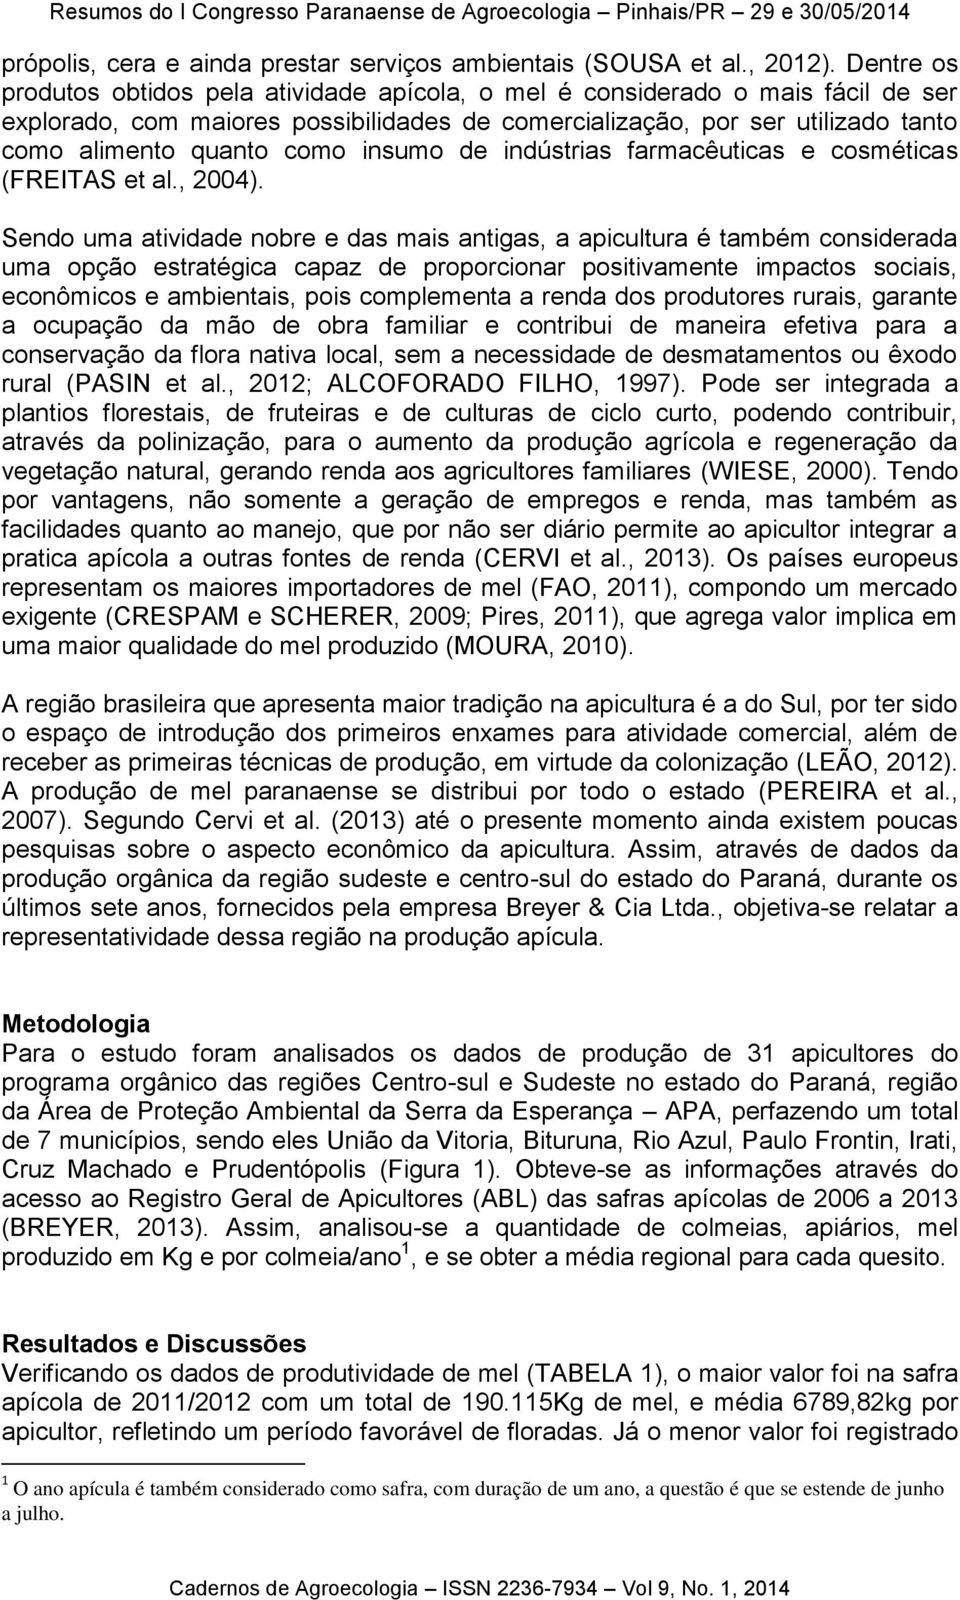 insumo de indústrias farmacêuticas e cosméticas (FREITAS et al., 2004).